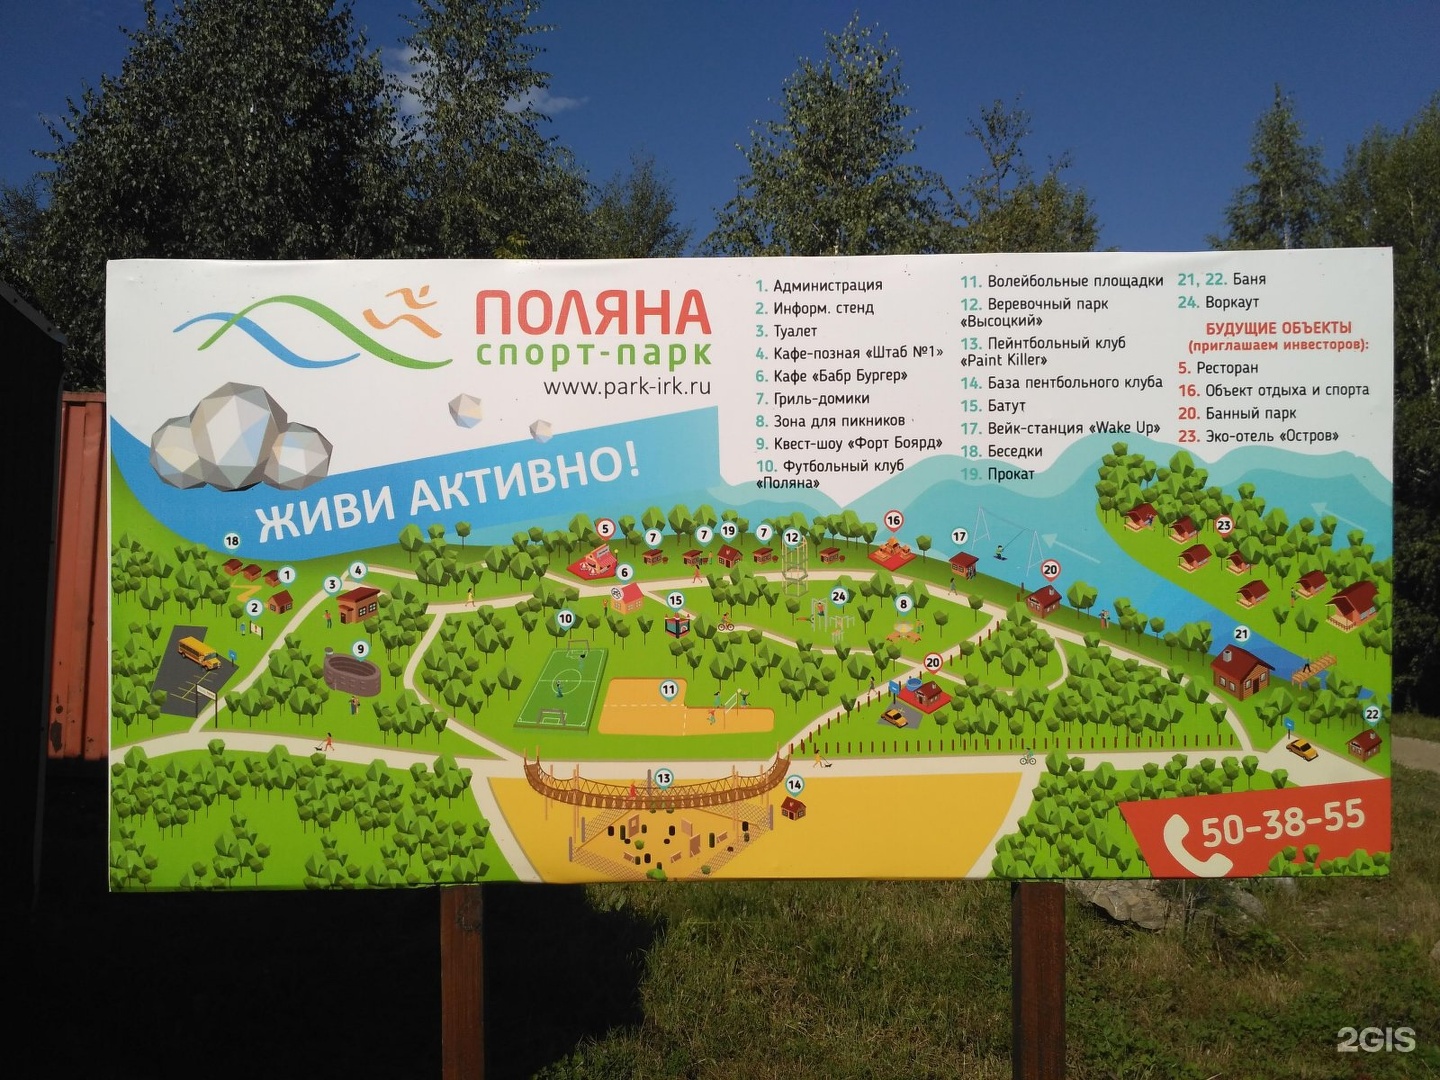 Спорт-парк Поляна Иркутск